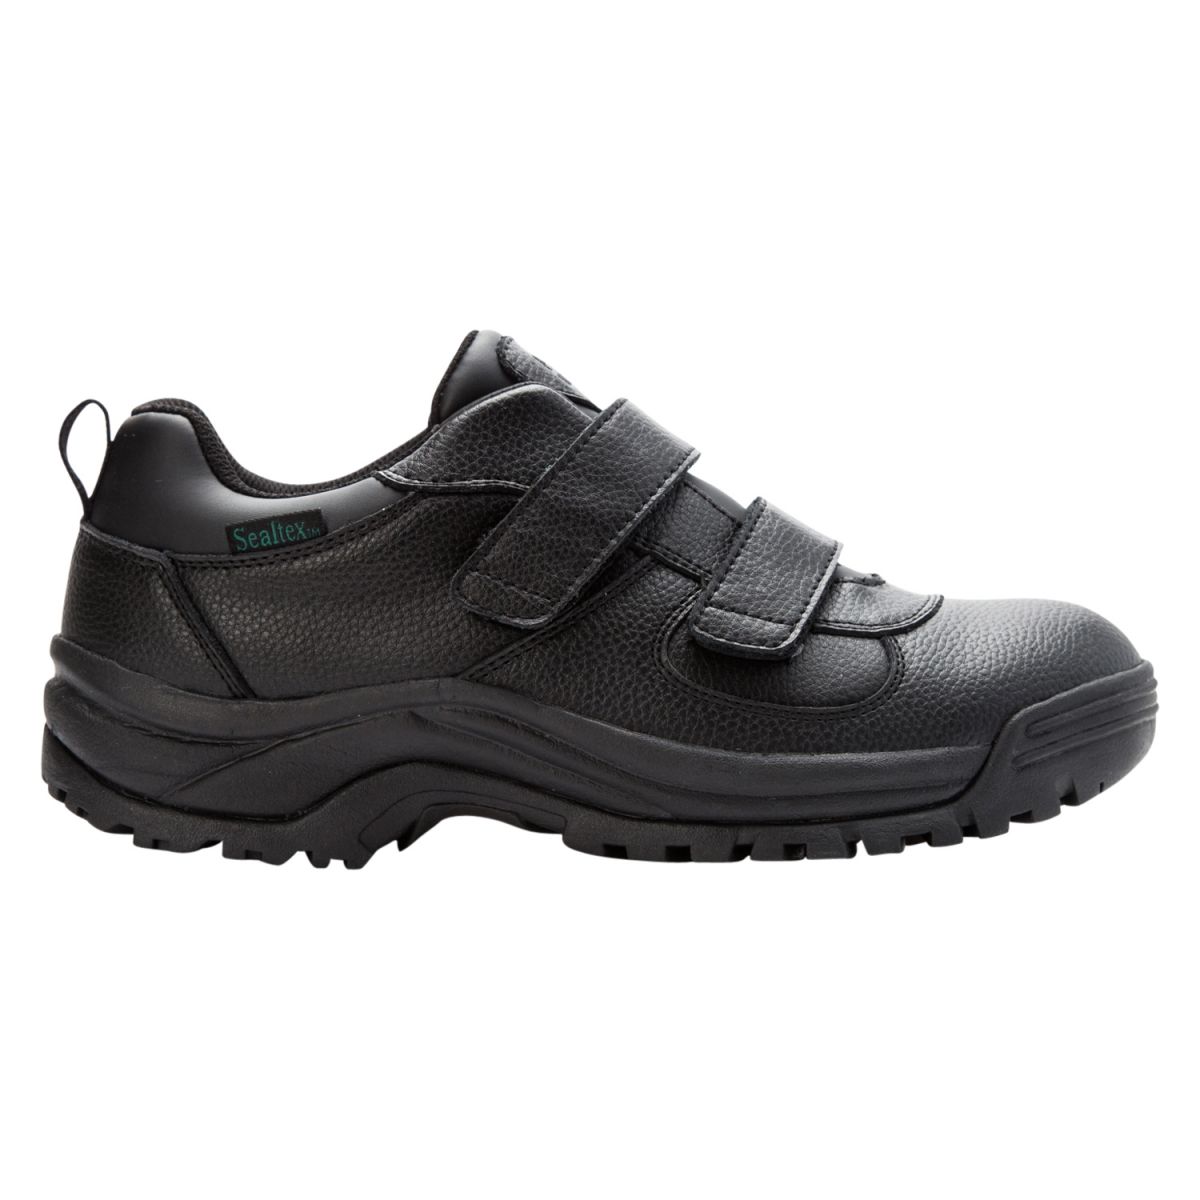 Propet Men's Cliff Walker Low Strap Waterproof Walking Shoe Black Leather - MBA023LBLK - image 2 of 6